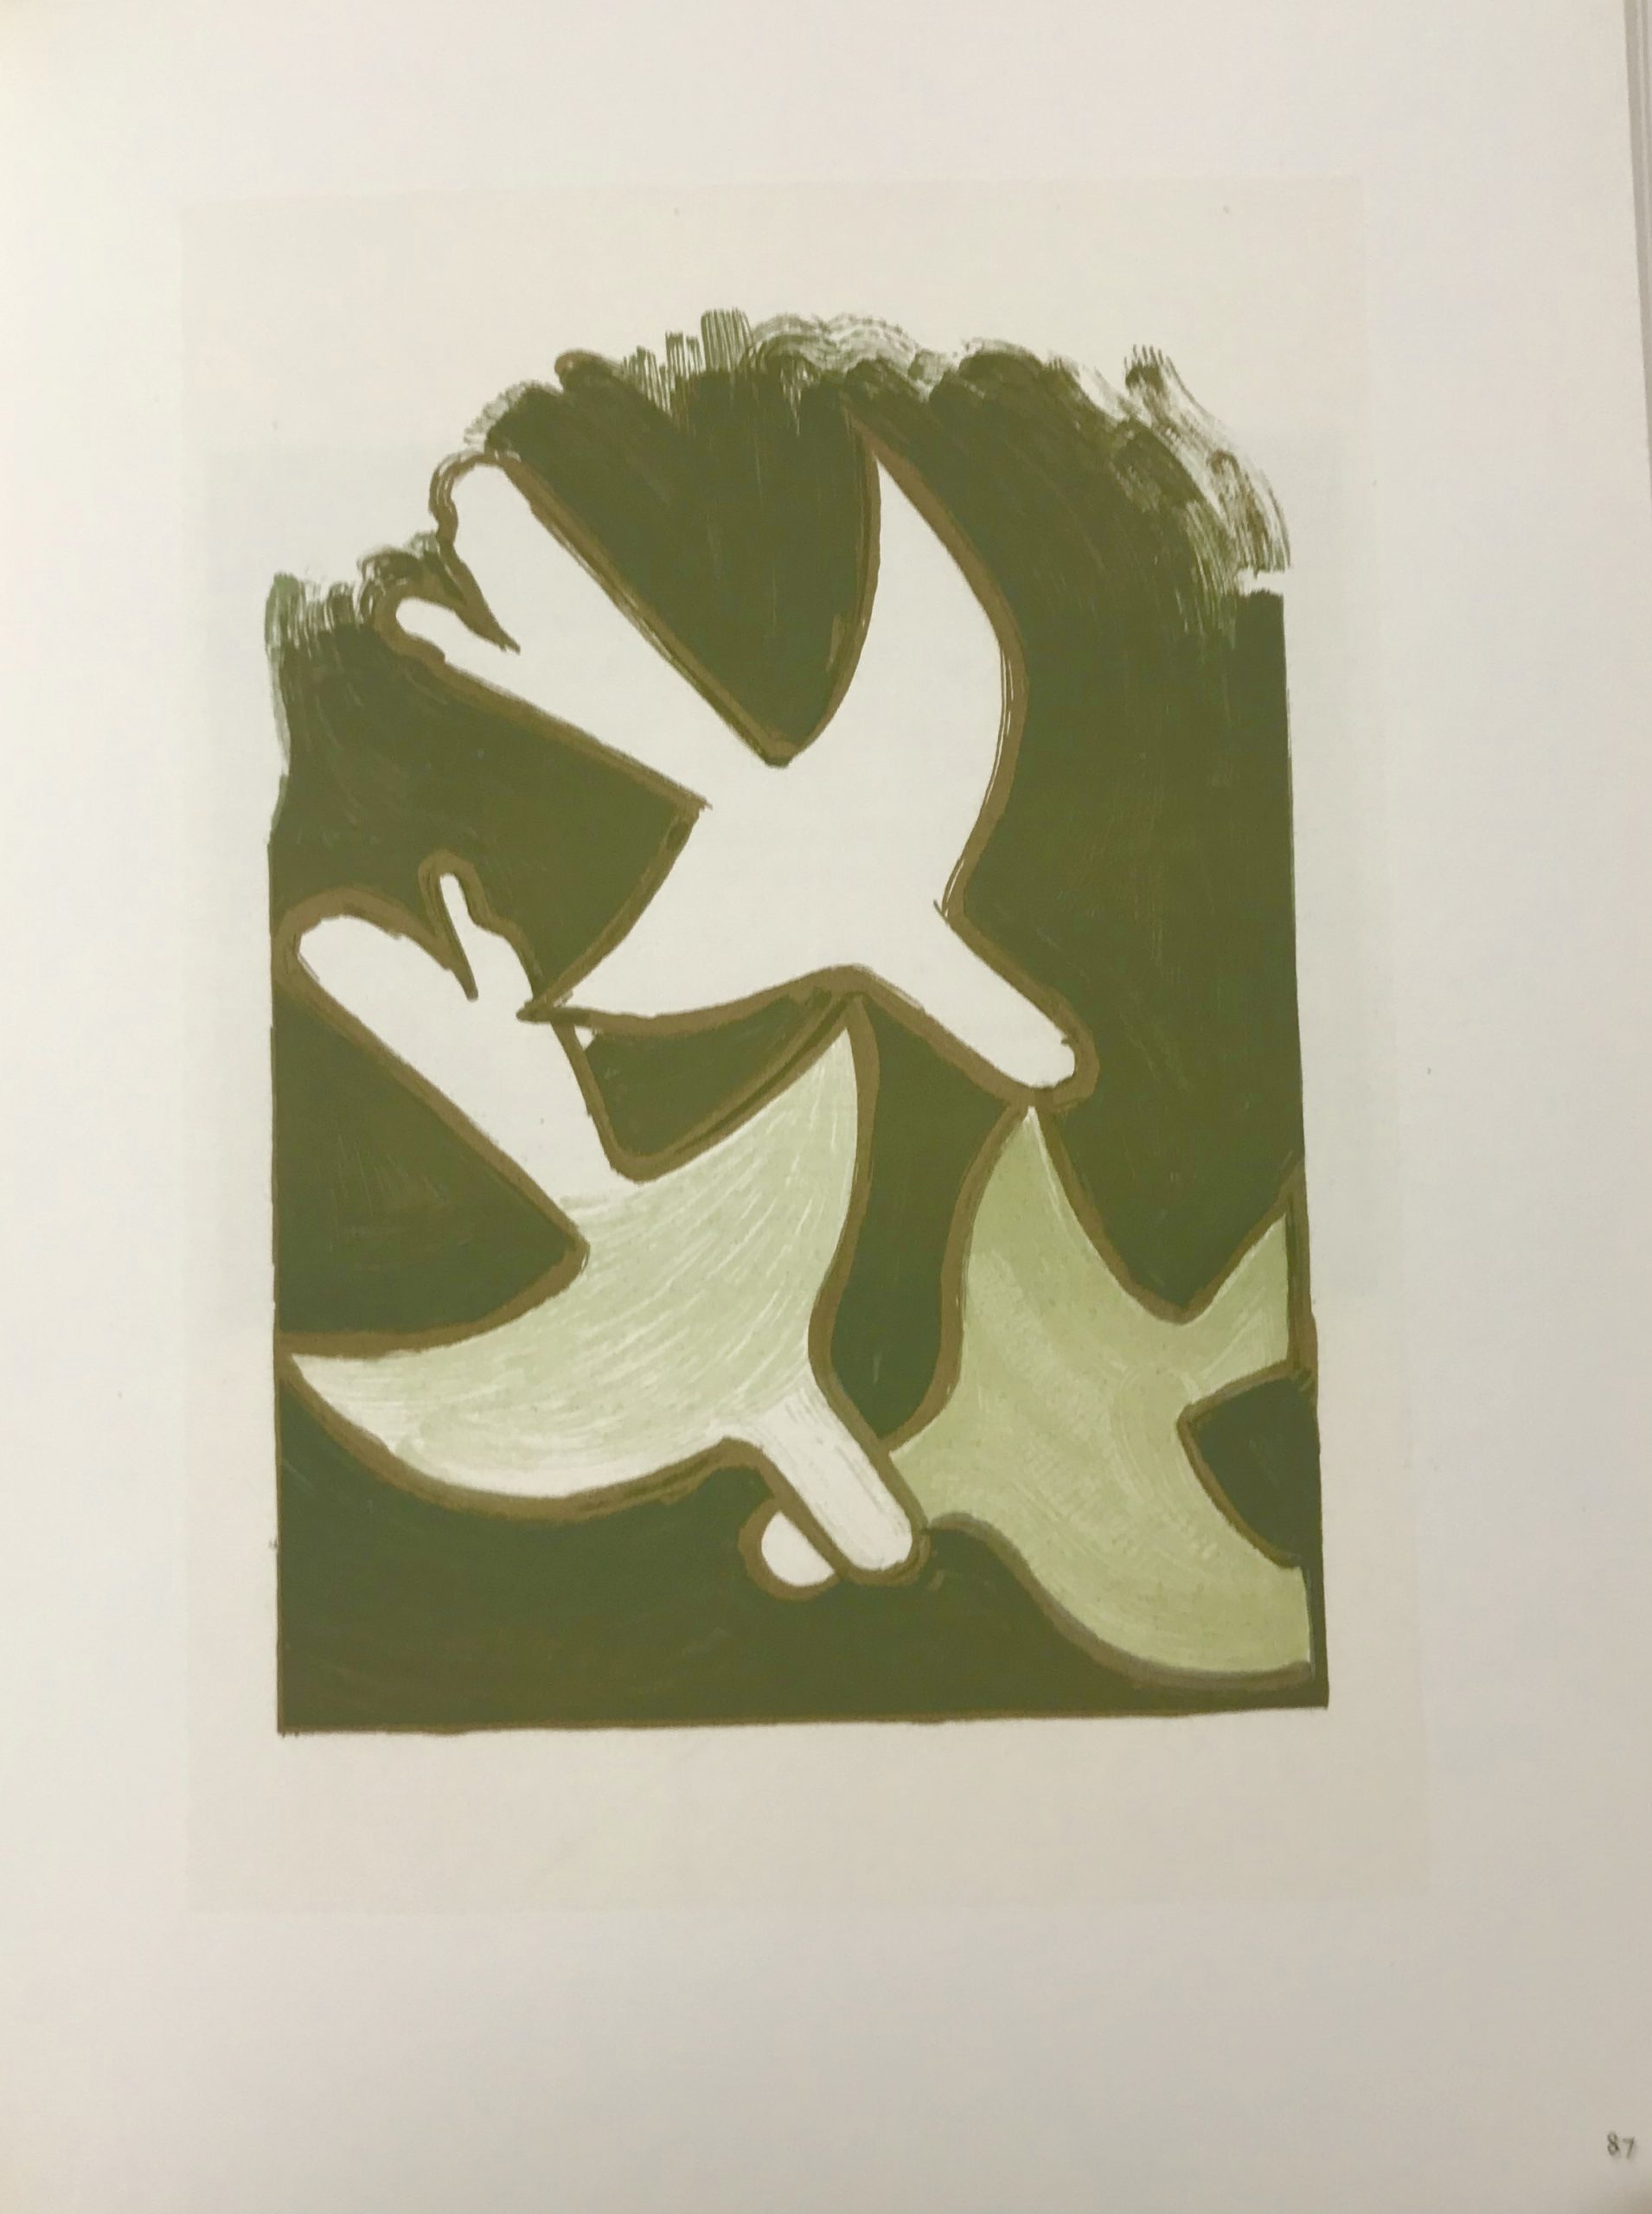 Braque Lithograph "Les oiseaux blancs" 1963 Mourlot